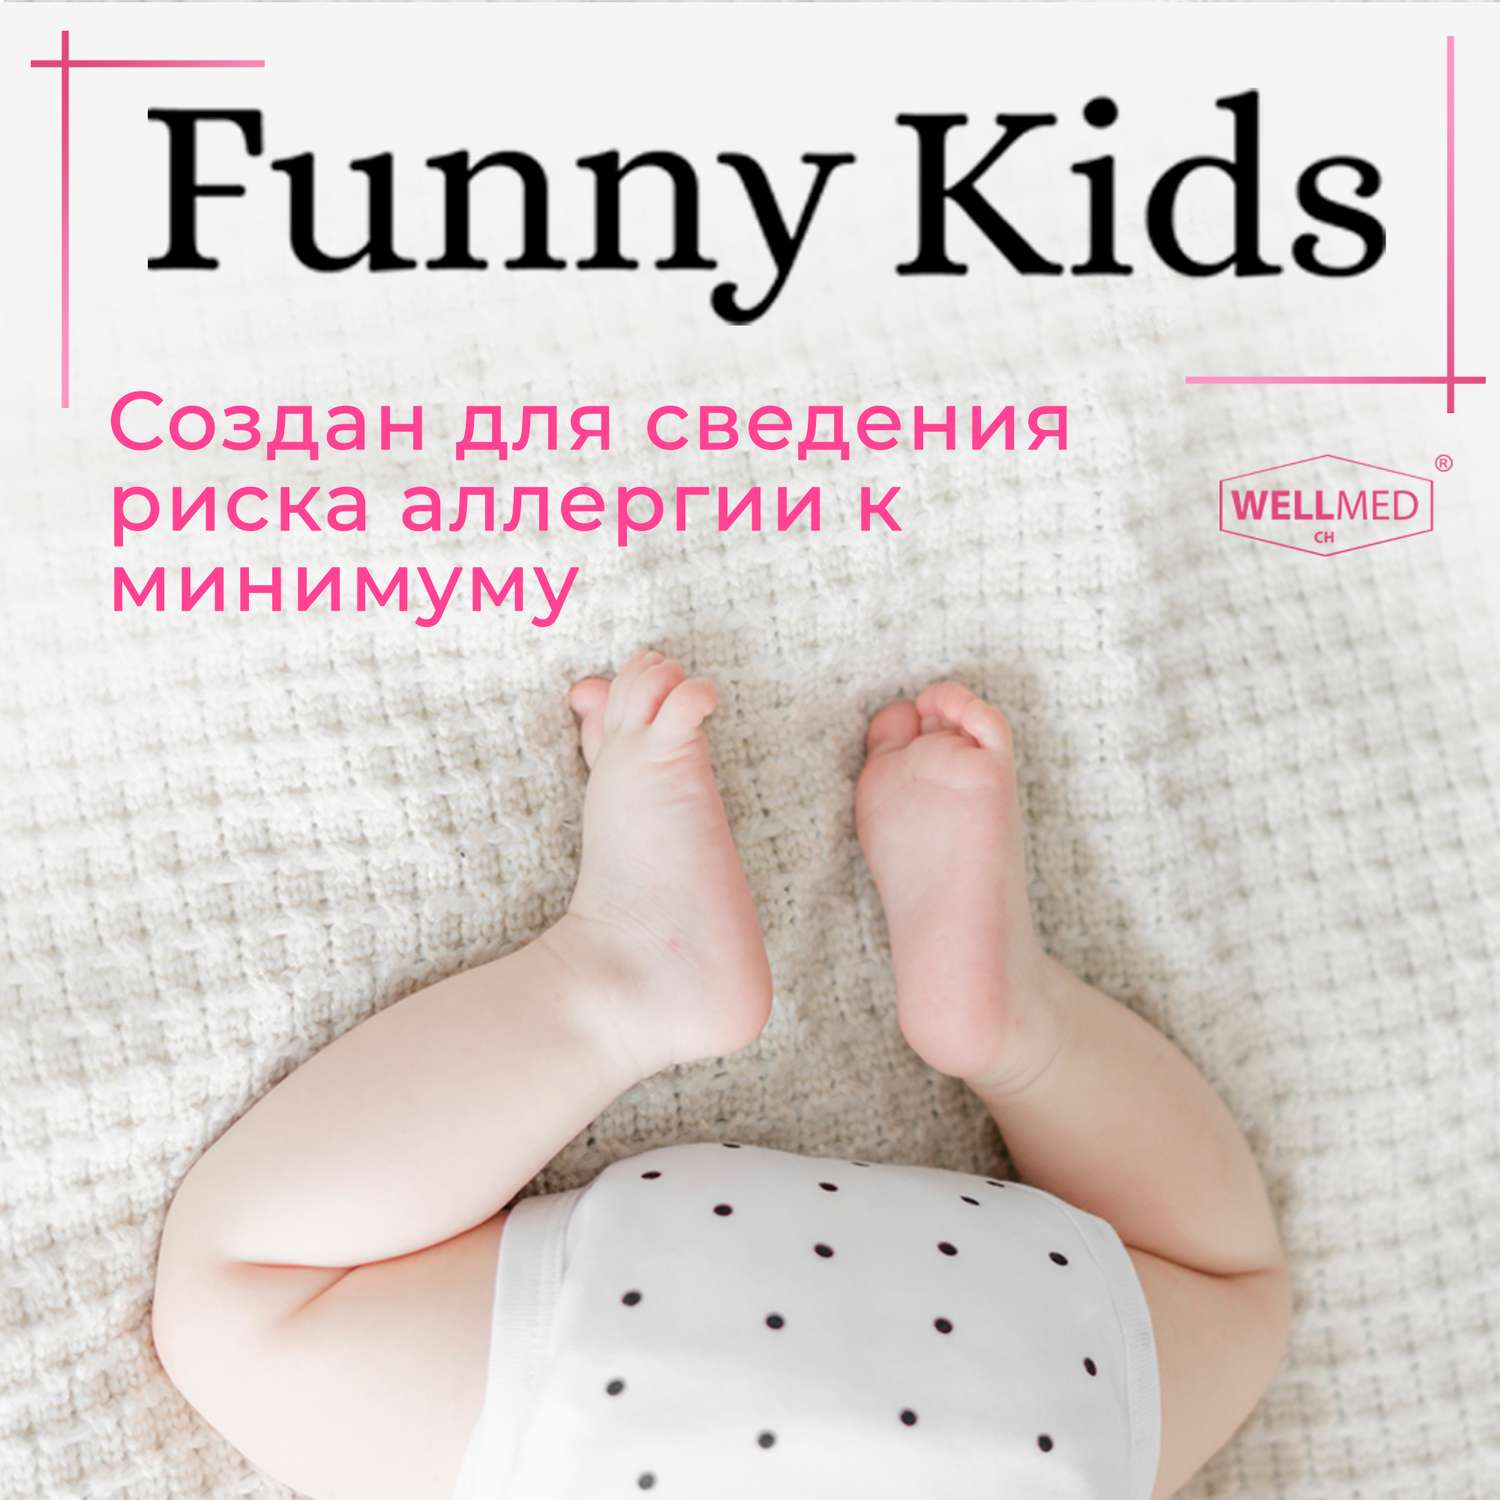 Детская присыпка Funny Kids WELLMED для новорожденных и малышей 0+ из чистого талька под подгузник - фото 8